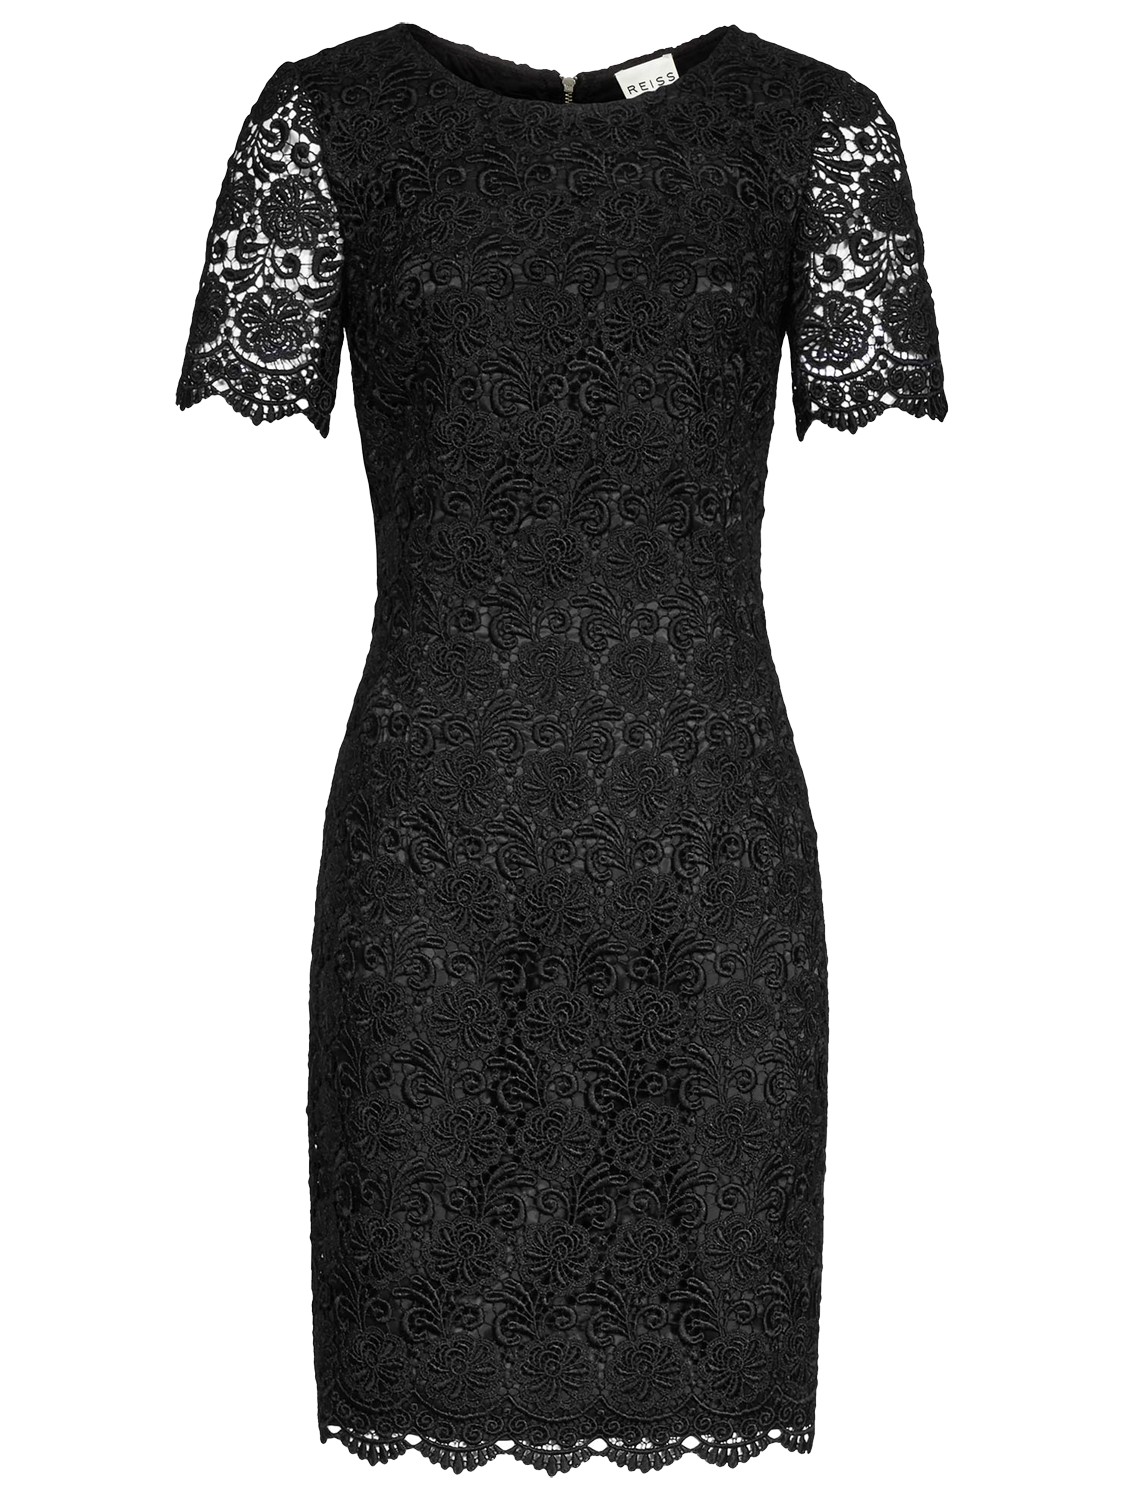 Reiss Swift Guipure Lace Shift Dress in Black | Lyst